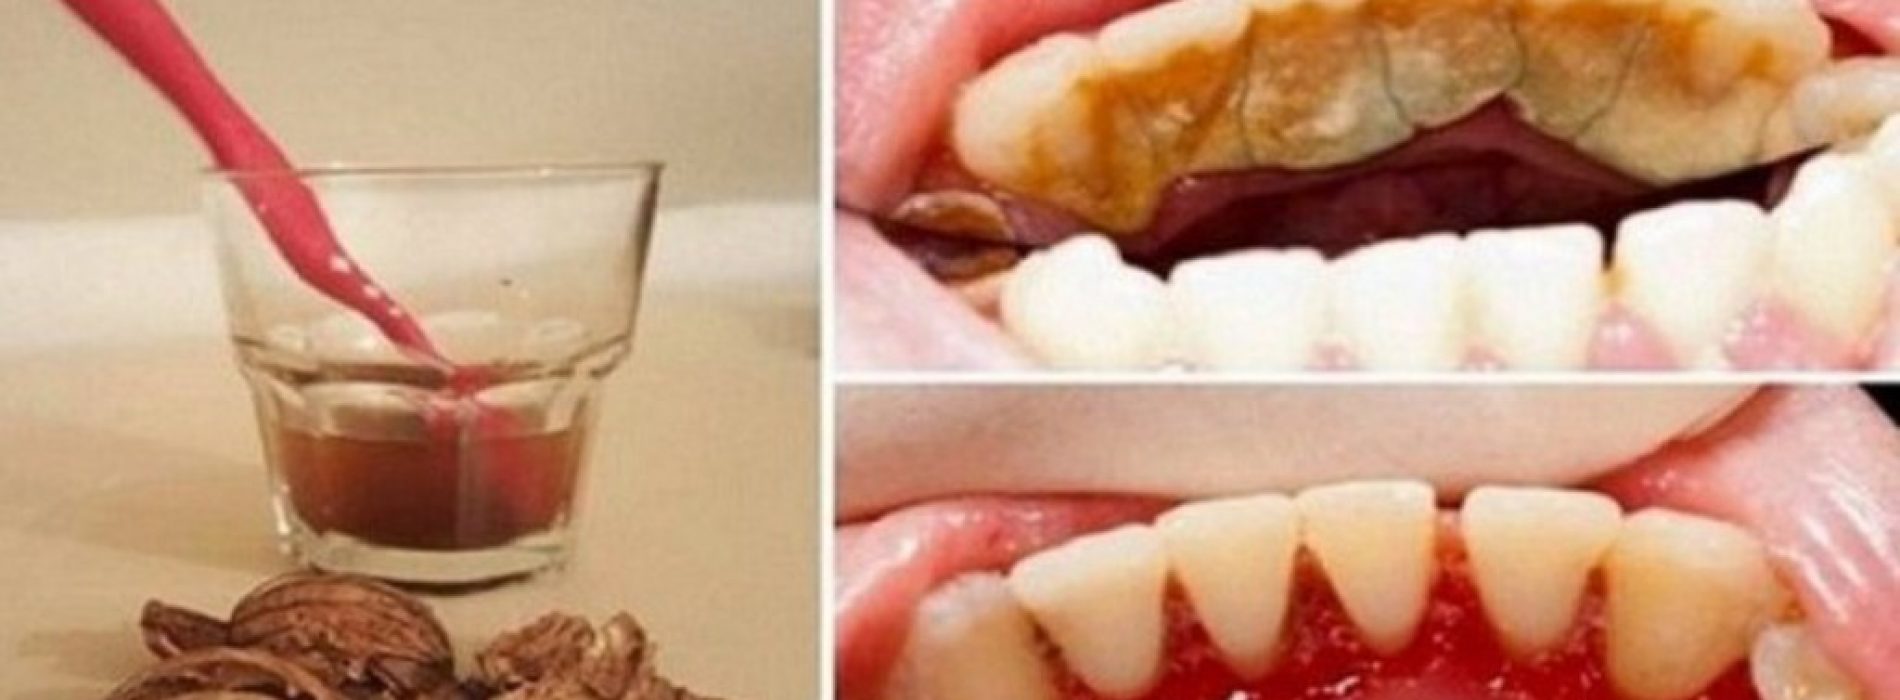 Tandplak, tandsteen en bloedend tandvlees behoren tot het verleden dankzij walnoten, GEWELDIG!